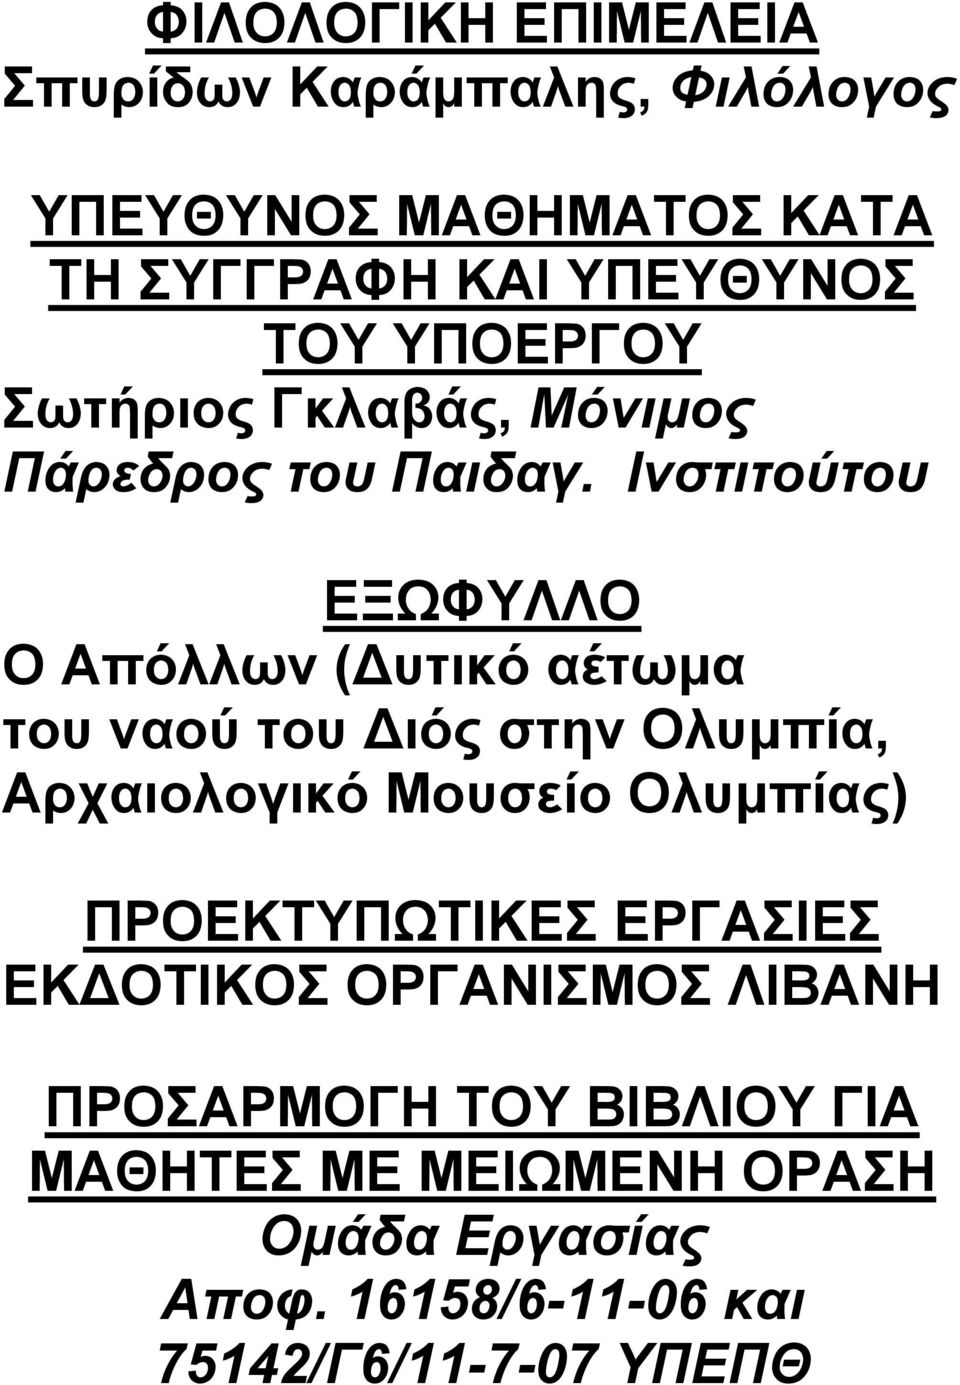 Ινστιτούτου ΕΞΩΦΥΛΛΟ Ο Απόλλων ( υτικό αέτωμα του ναού του ιός στην Ολυμπία, Αρχαιολογικό Μουσείο Ολυμπίας)